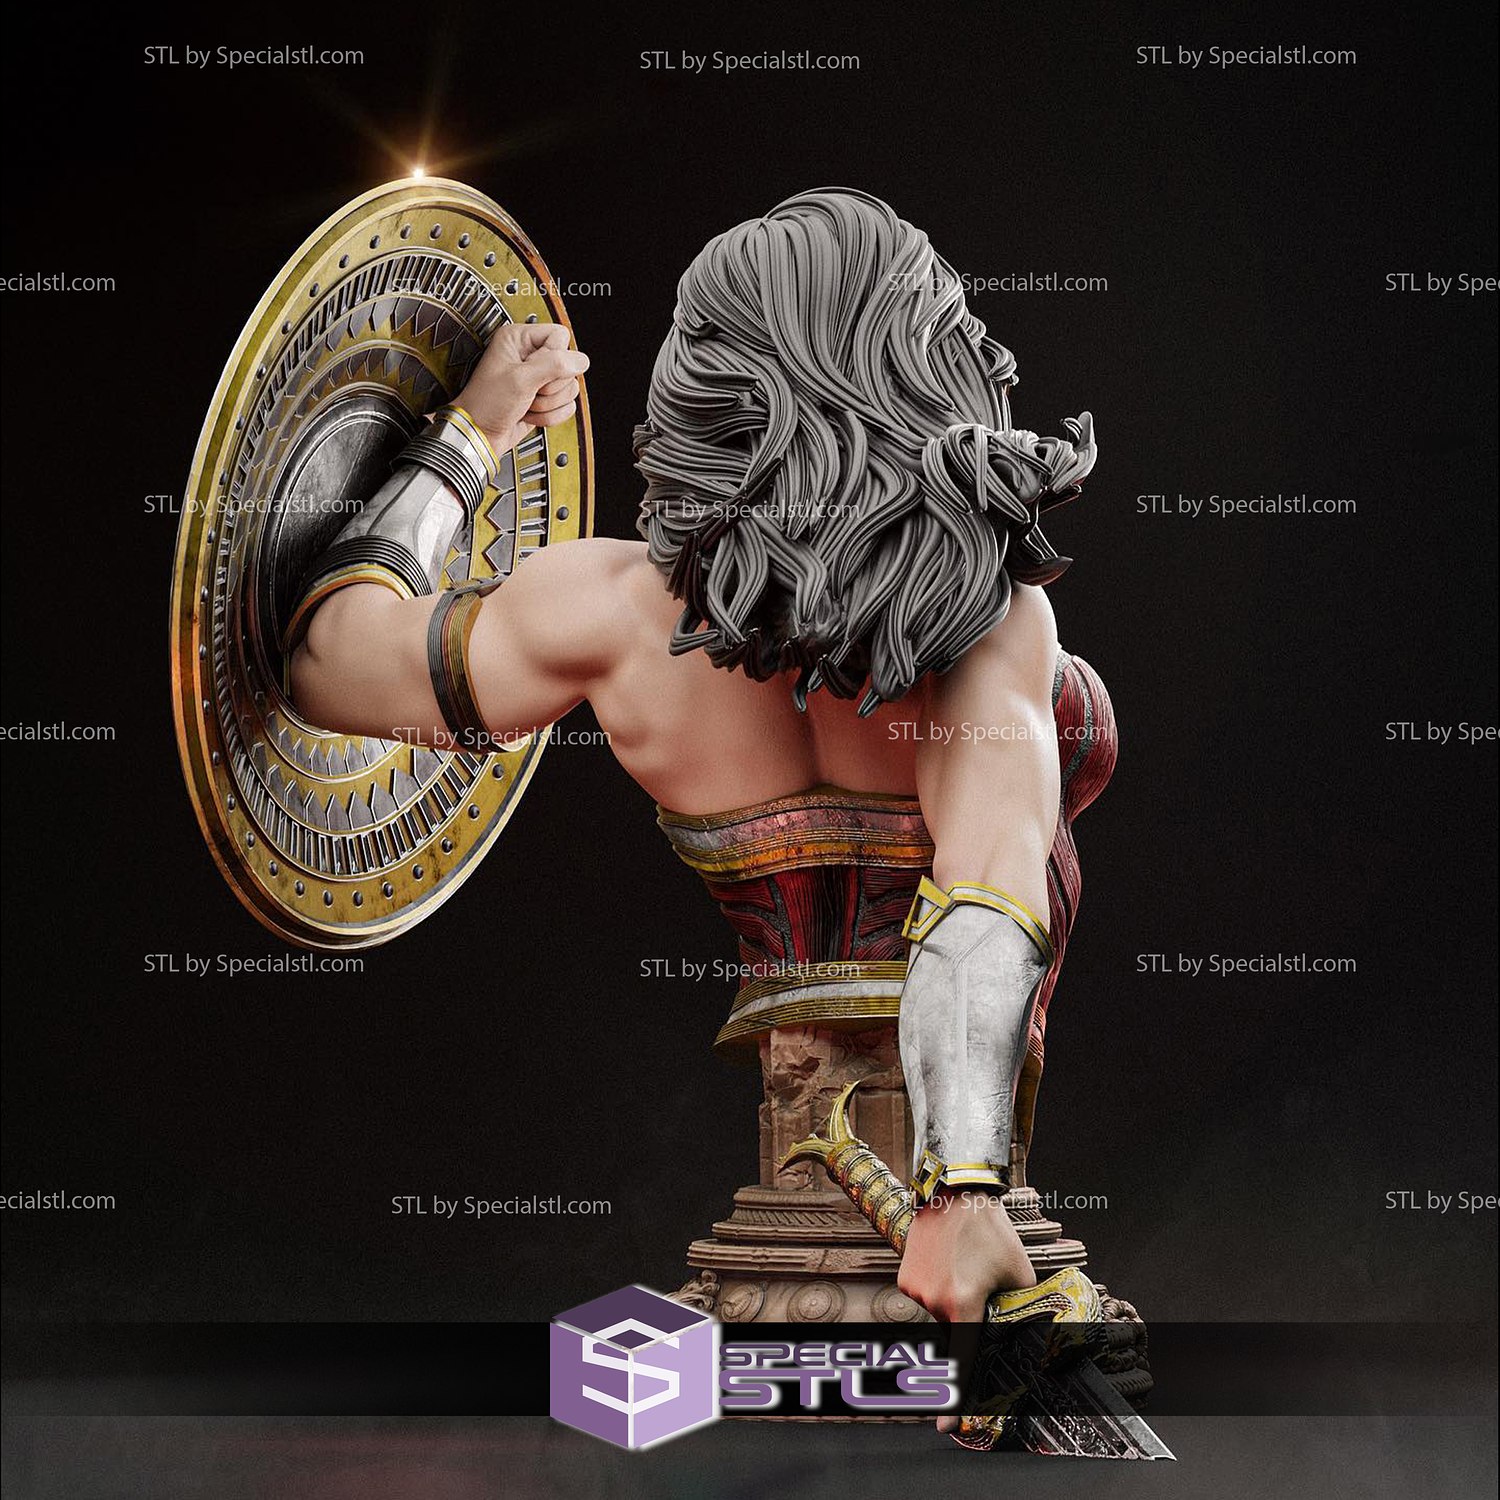 Wonder Woman Warrior in Battle Bust 3D Printing Figurine